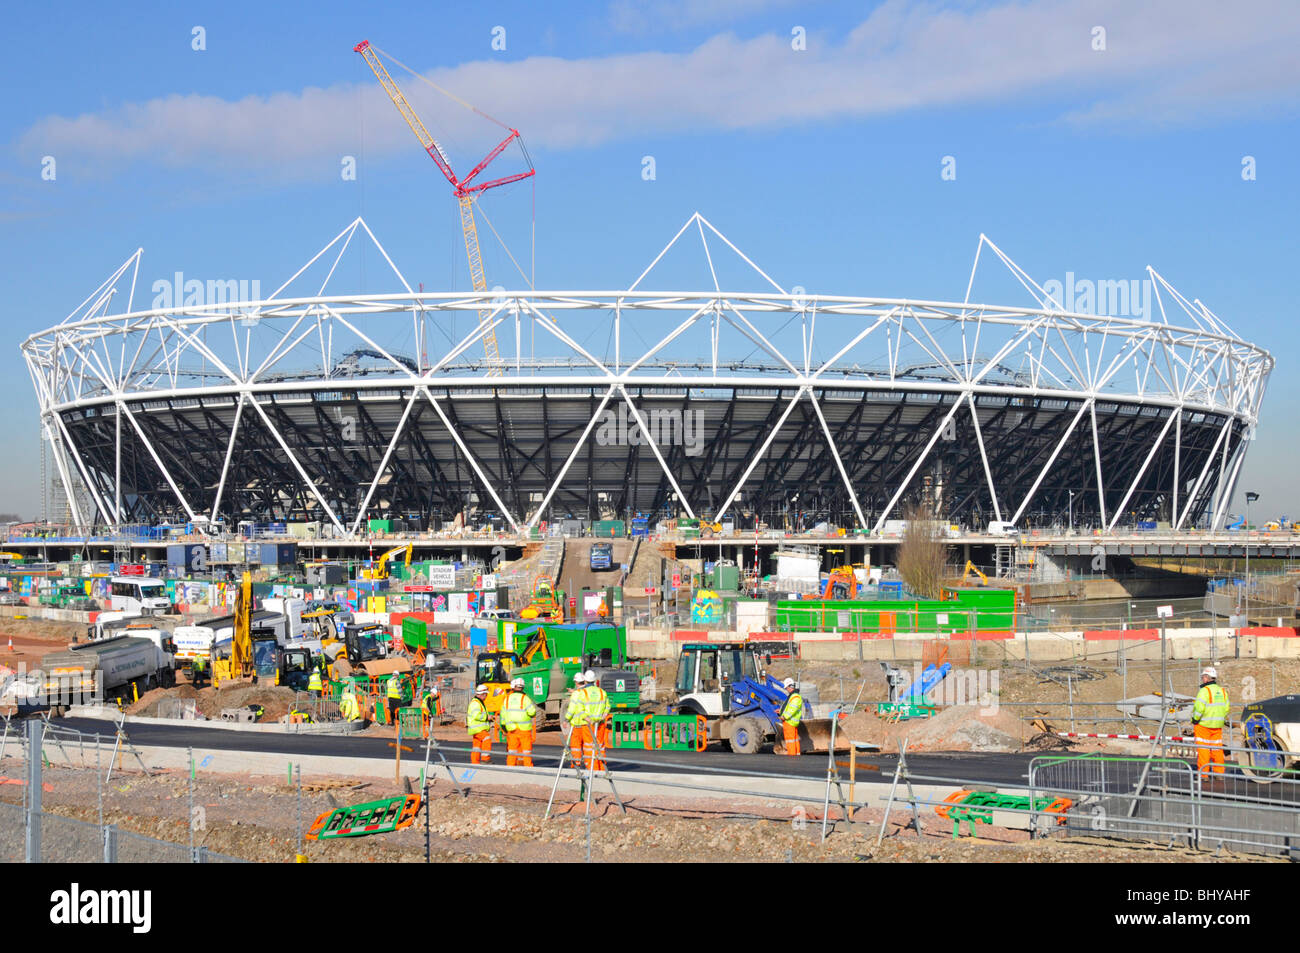 London Olympische Paralympische Spiele 2012 Hauptsportstadion Bau Baustelle Bauarbeiten in Progress Stratford Newham East London England UK Stockfoto